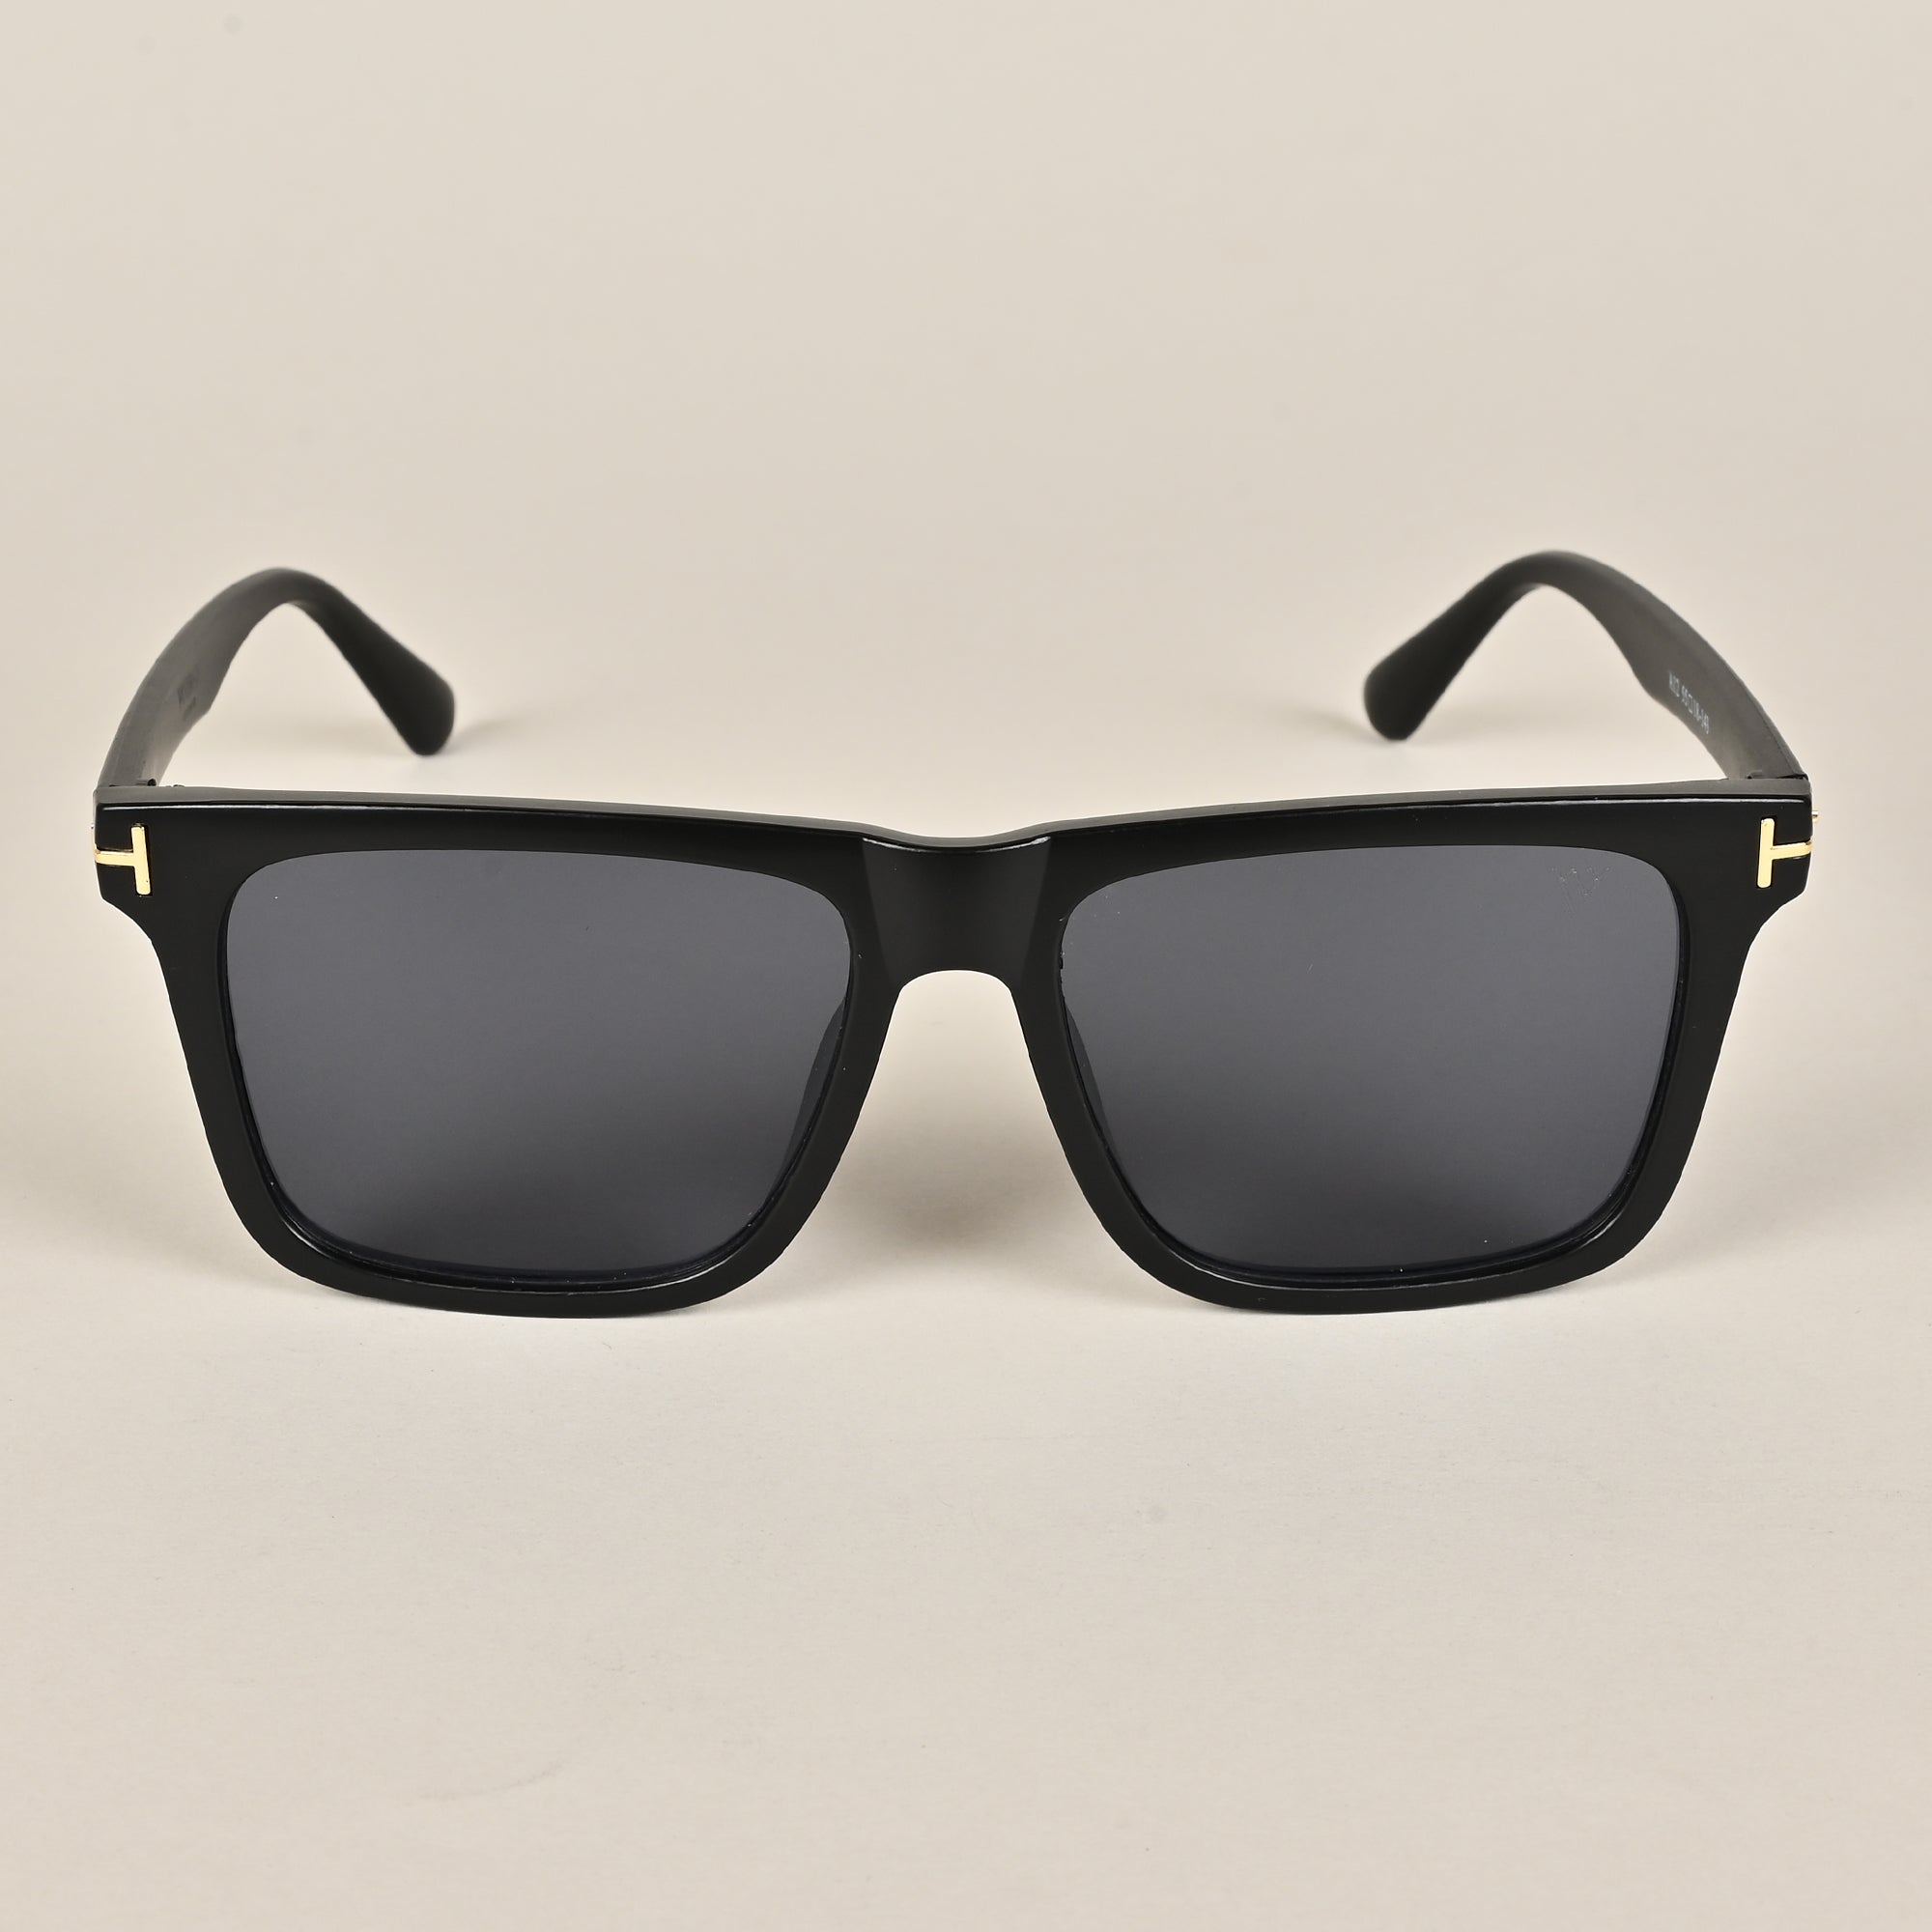 Voyage Black Wayfarer Sunglasses for Men & Women (A12MG3953)